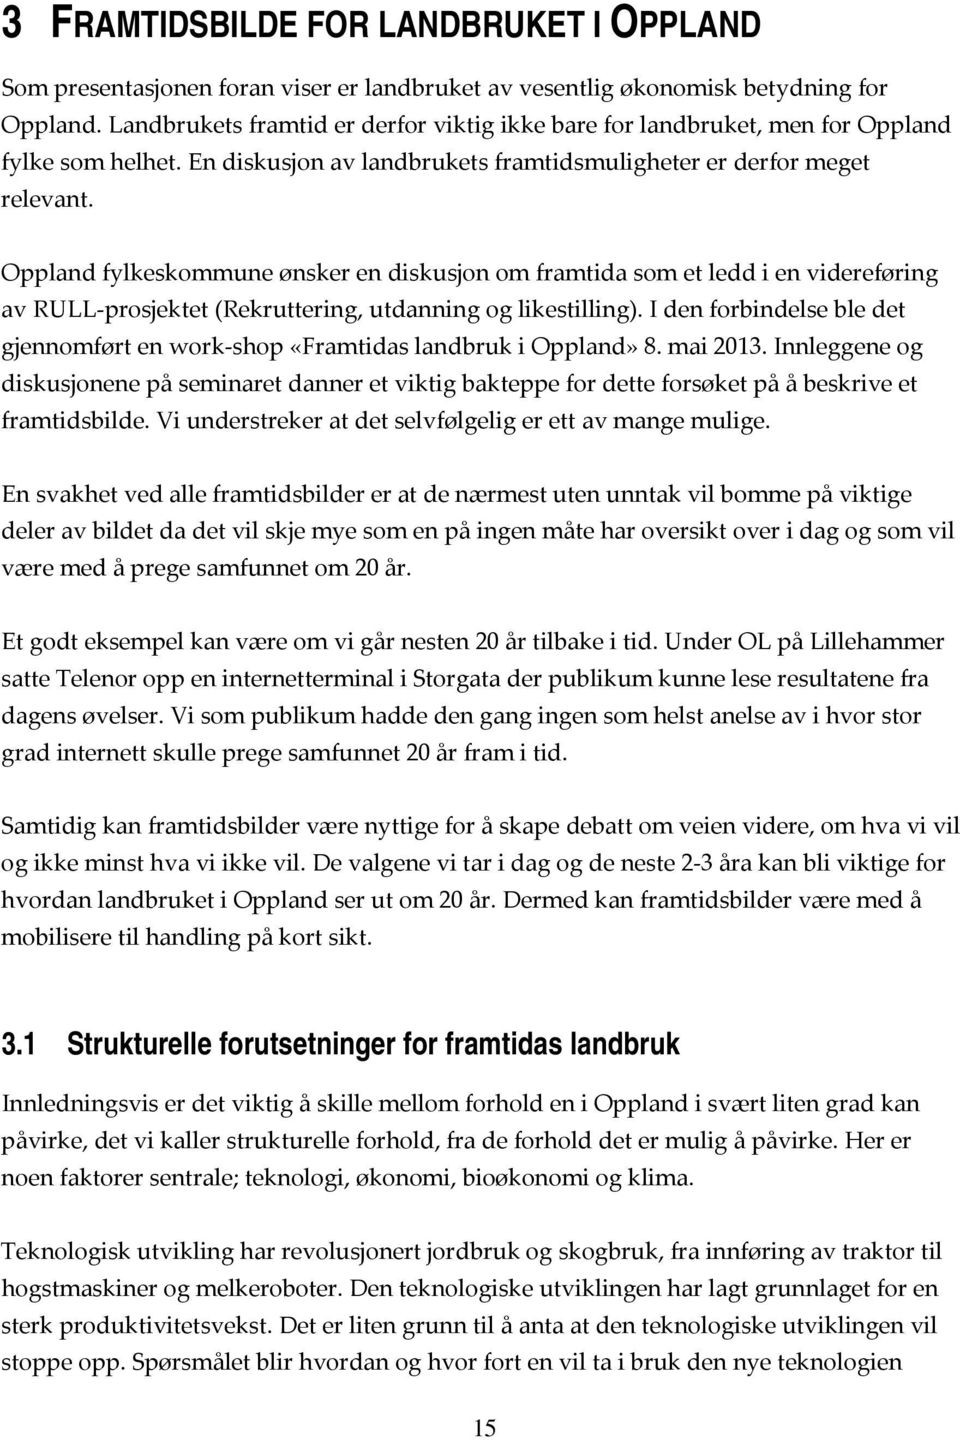 Oppland fylkeskommune ønsker en diskusjon om framtida som et ledd i en videreføring av RULL prosjektet (Rekruttering, utdanning og likestilling).